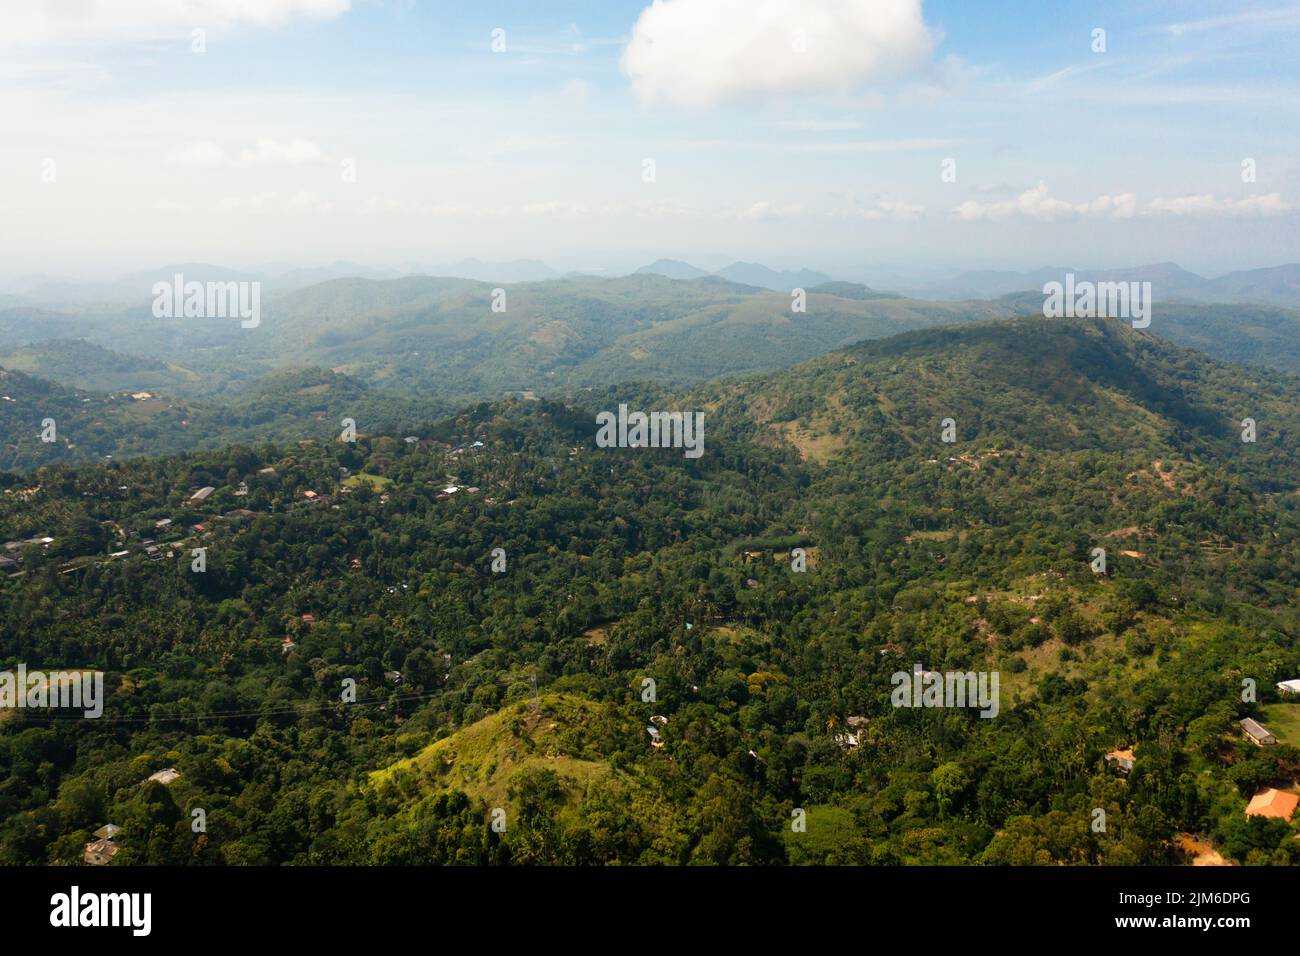 Cime di montagna coperte di foresta. Pendii di montagna con vegetazione sempreverde. Sri Lanka. Foto Stock